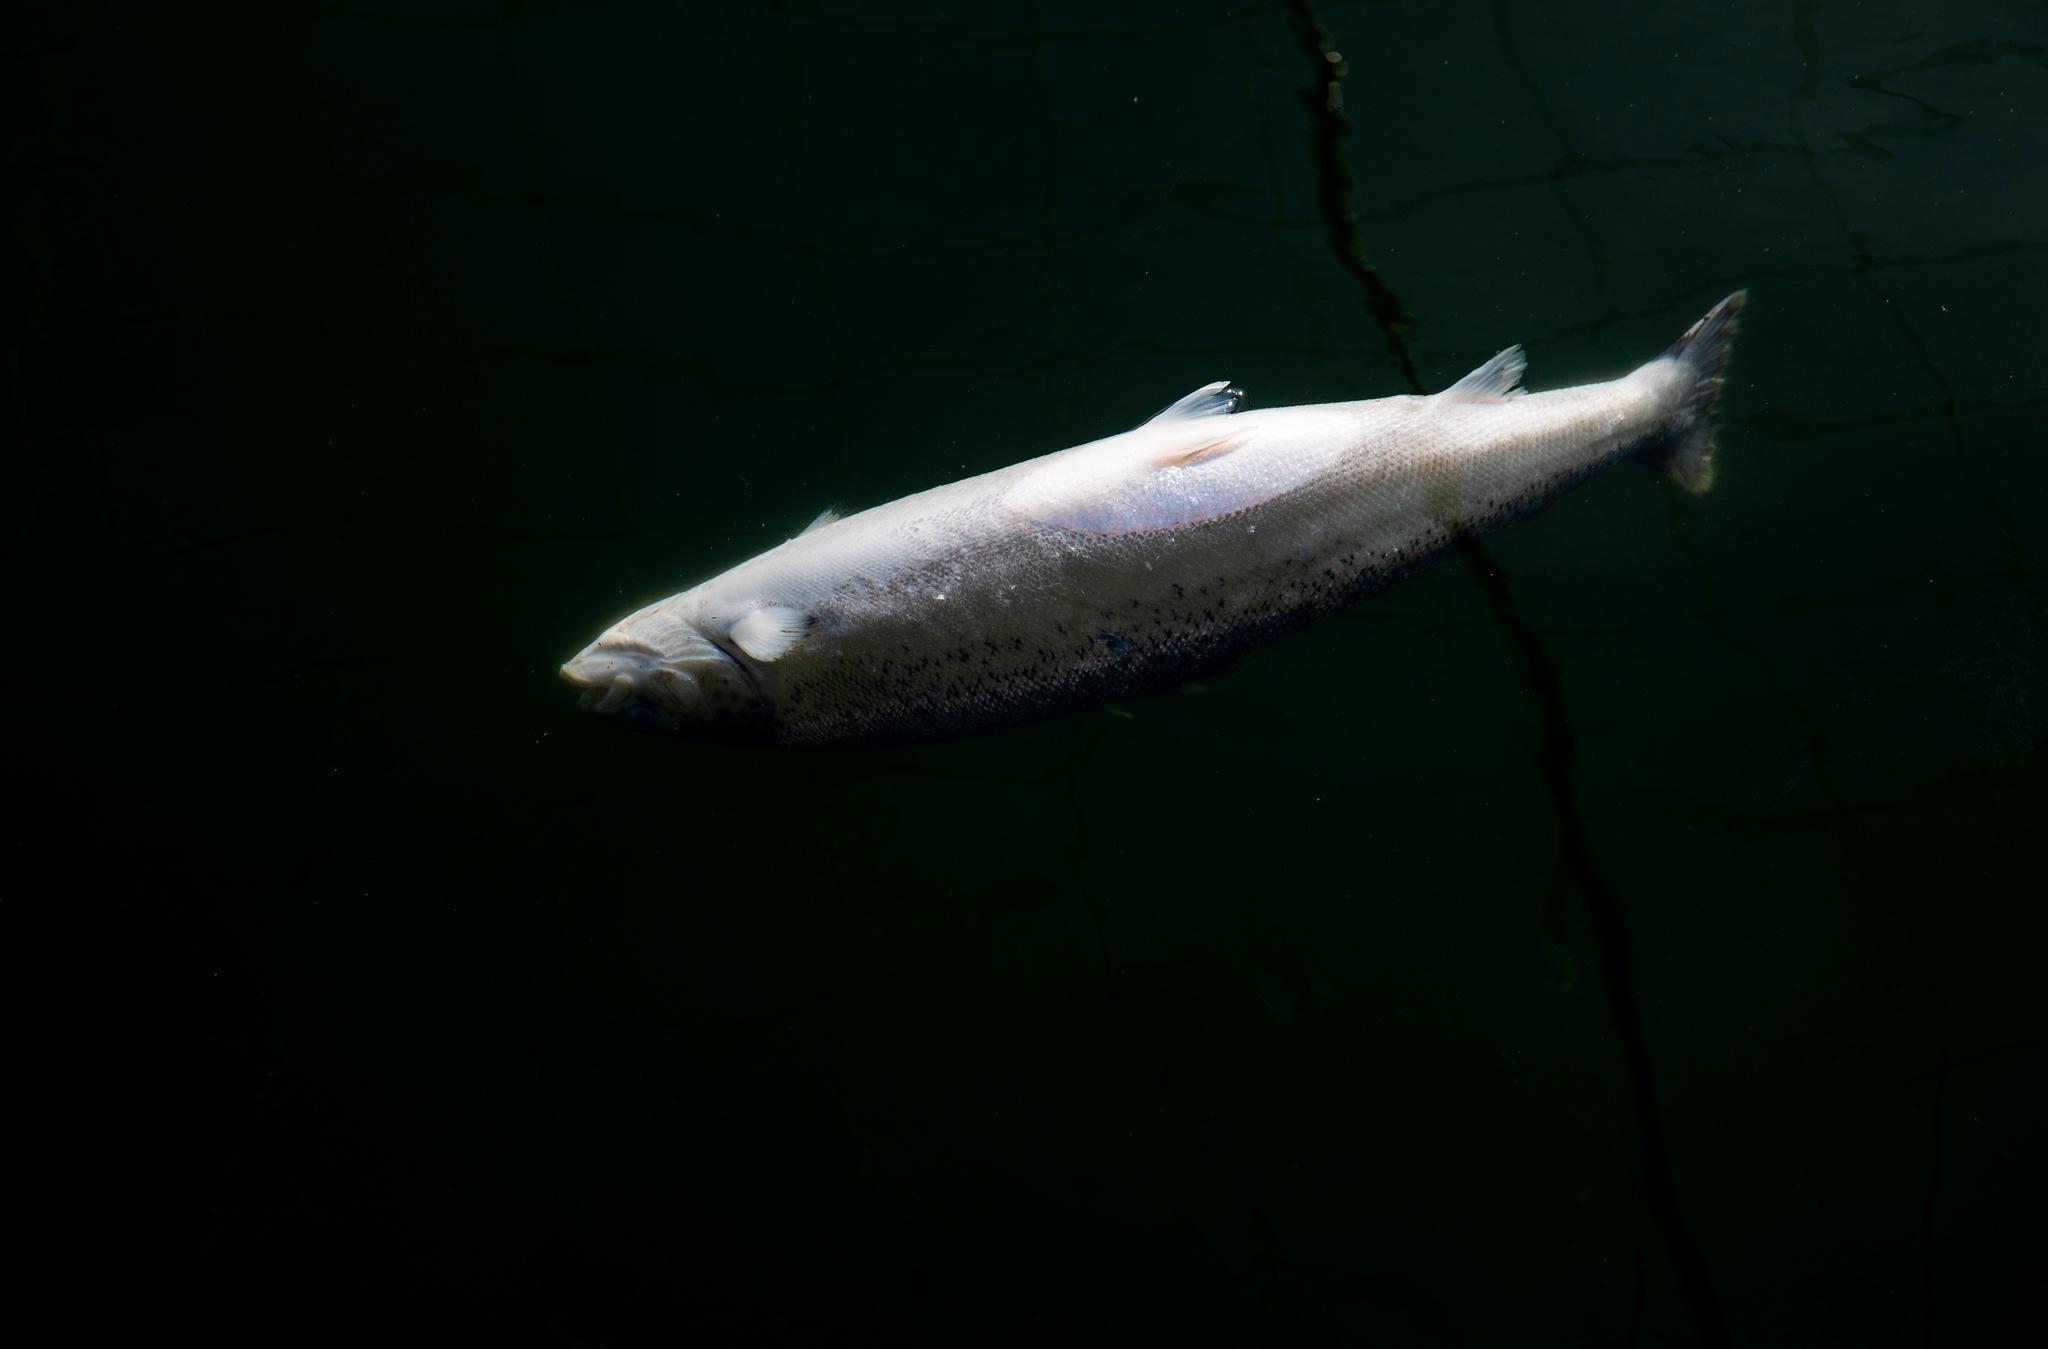 En død fisk flyter i en av merdene til Mortenlaks ved Rinøya i Lødingen i Nordland. Fisken synker først til bunns når den dør, men etter en stund utvikles gasser som gjør at den flyter. 